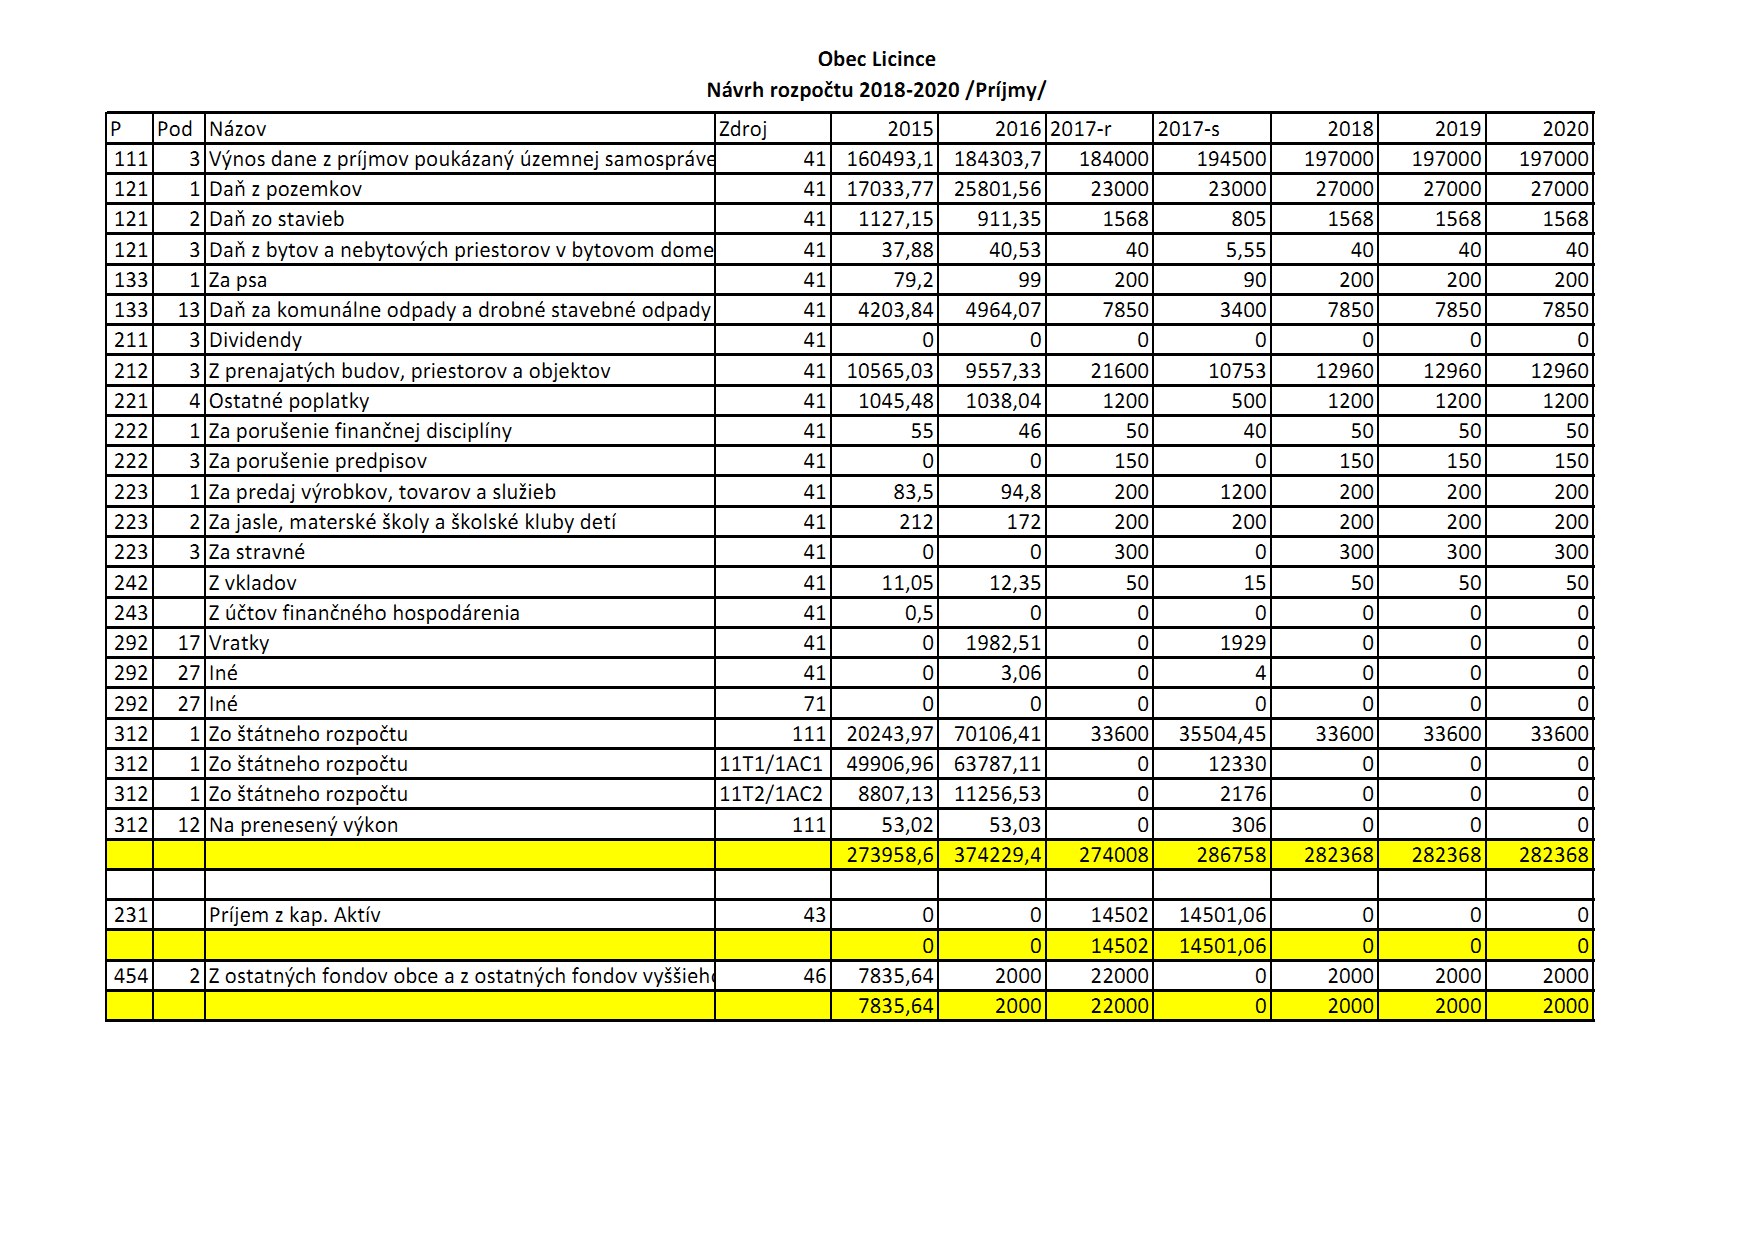 Návrh rozpočtu obce 2015 - 2020